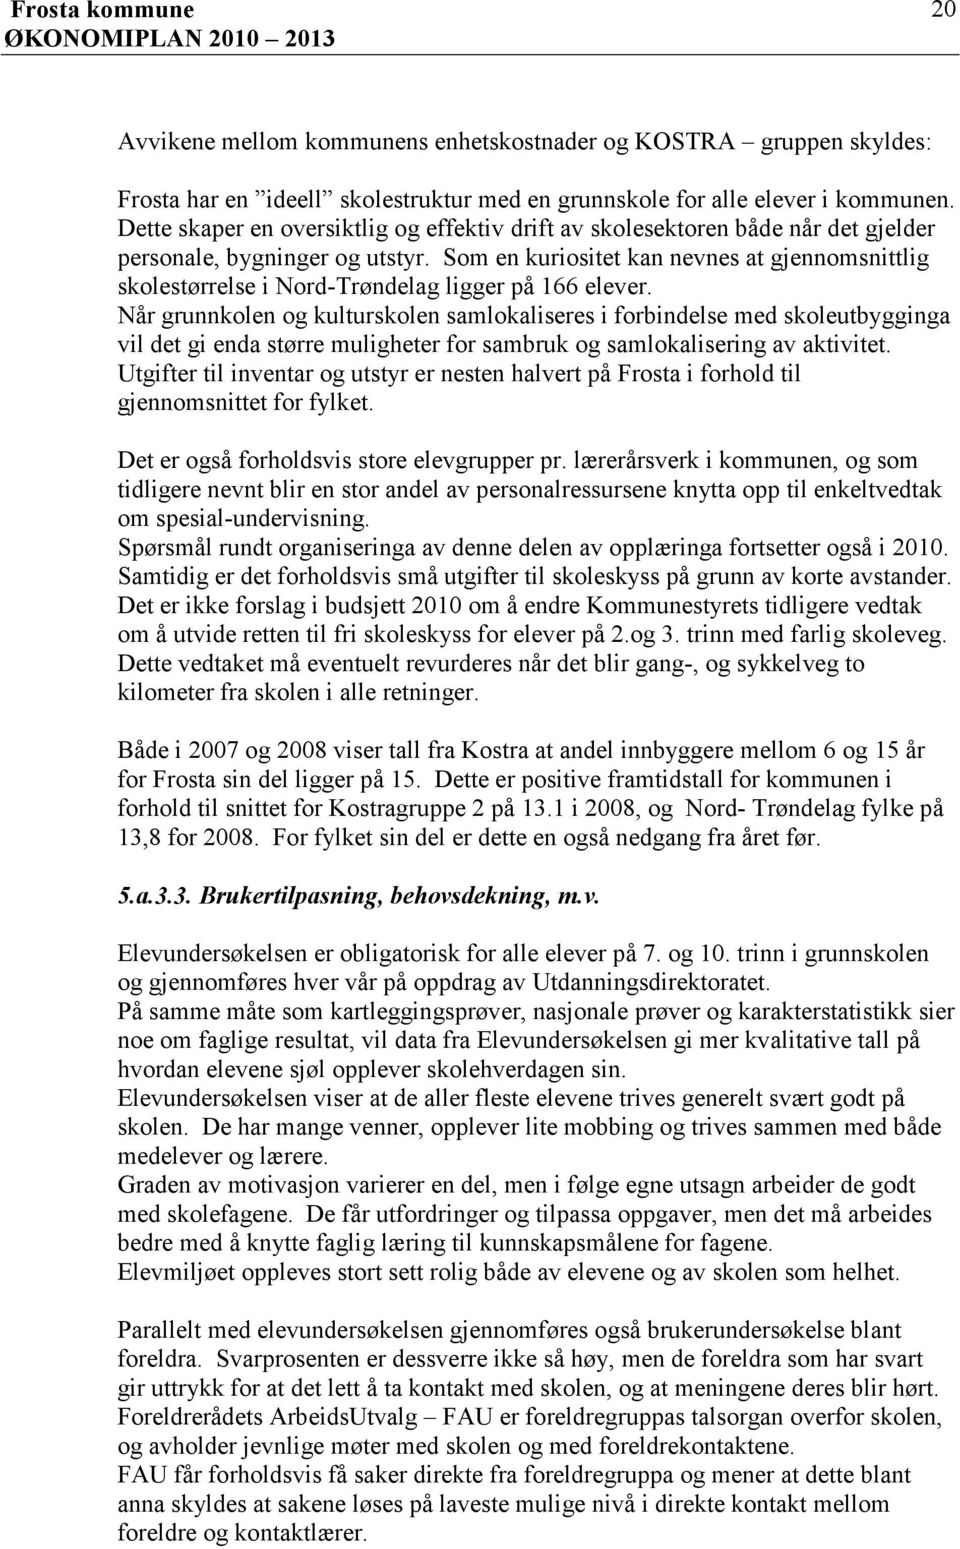 Som en kuriositet kan nevnes at gjennomsnittlig skolestørrelse i NordTrøndelag ligger på 166 elever.